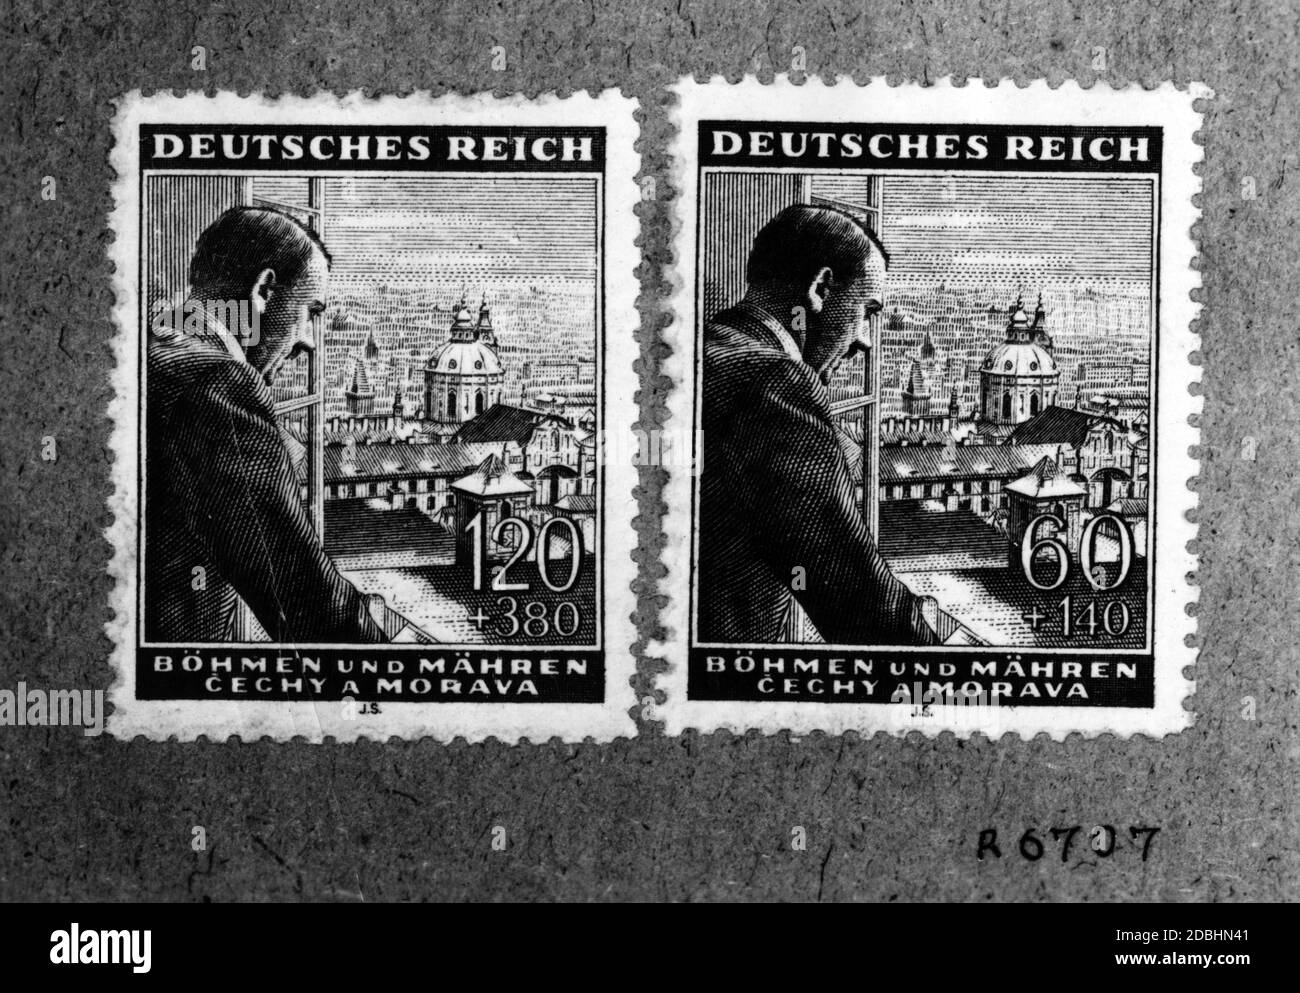 Adolf Hitler comme un motif de timbre pour le Reich allemand. Hitler est représenté sur un motif de Bohême et de Moravie avec la ville de Prague. Ce sont des timbres semi-postaux d'une série spéciale du Reichspast, qui a été valable de 1943 jusqu'à la fin de la guerre. Le montant marqué + a été reçu comme don. Banque D'Images